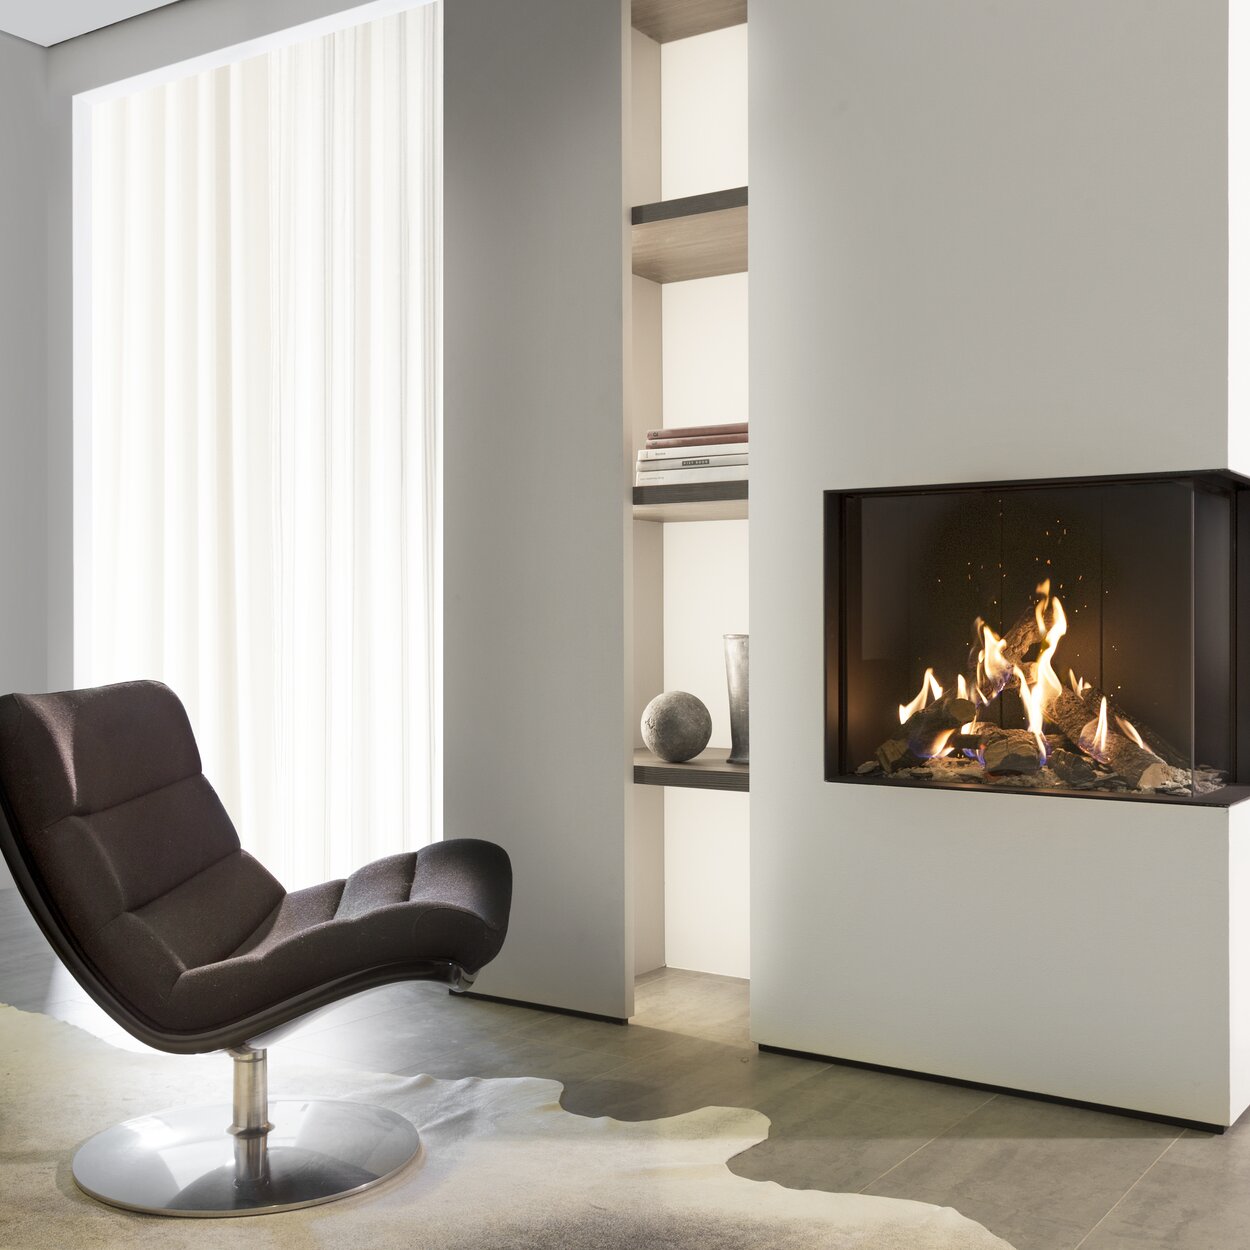 Version d'angle de la cheminée à gaz GP65/55C avec habillage blanc dans un salon sobre et lumineux avec fauteuil